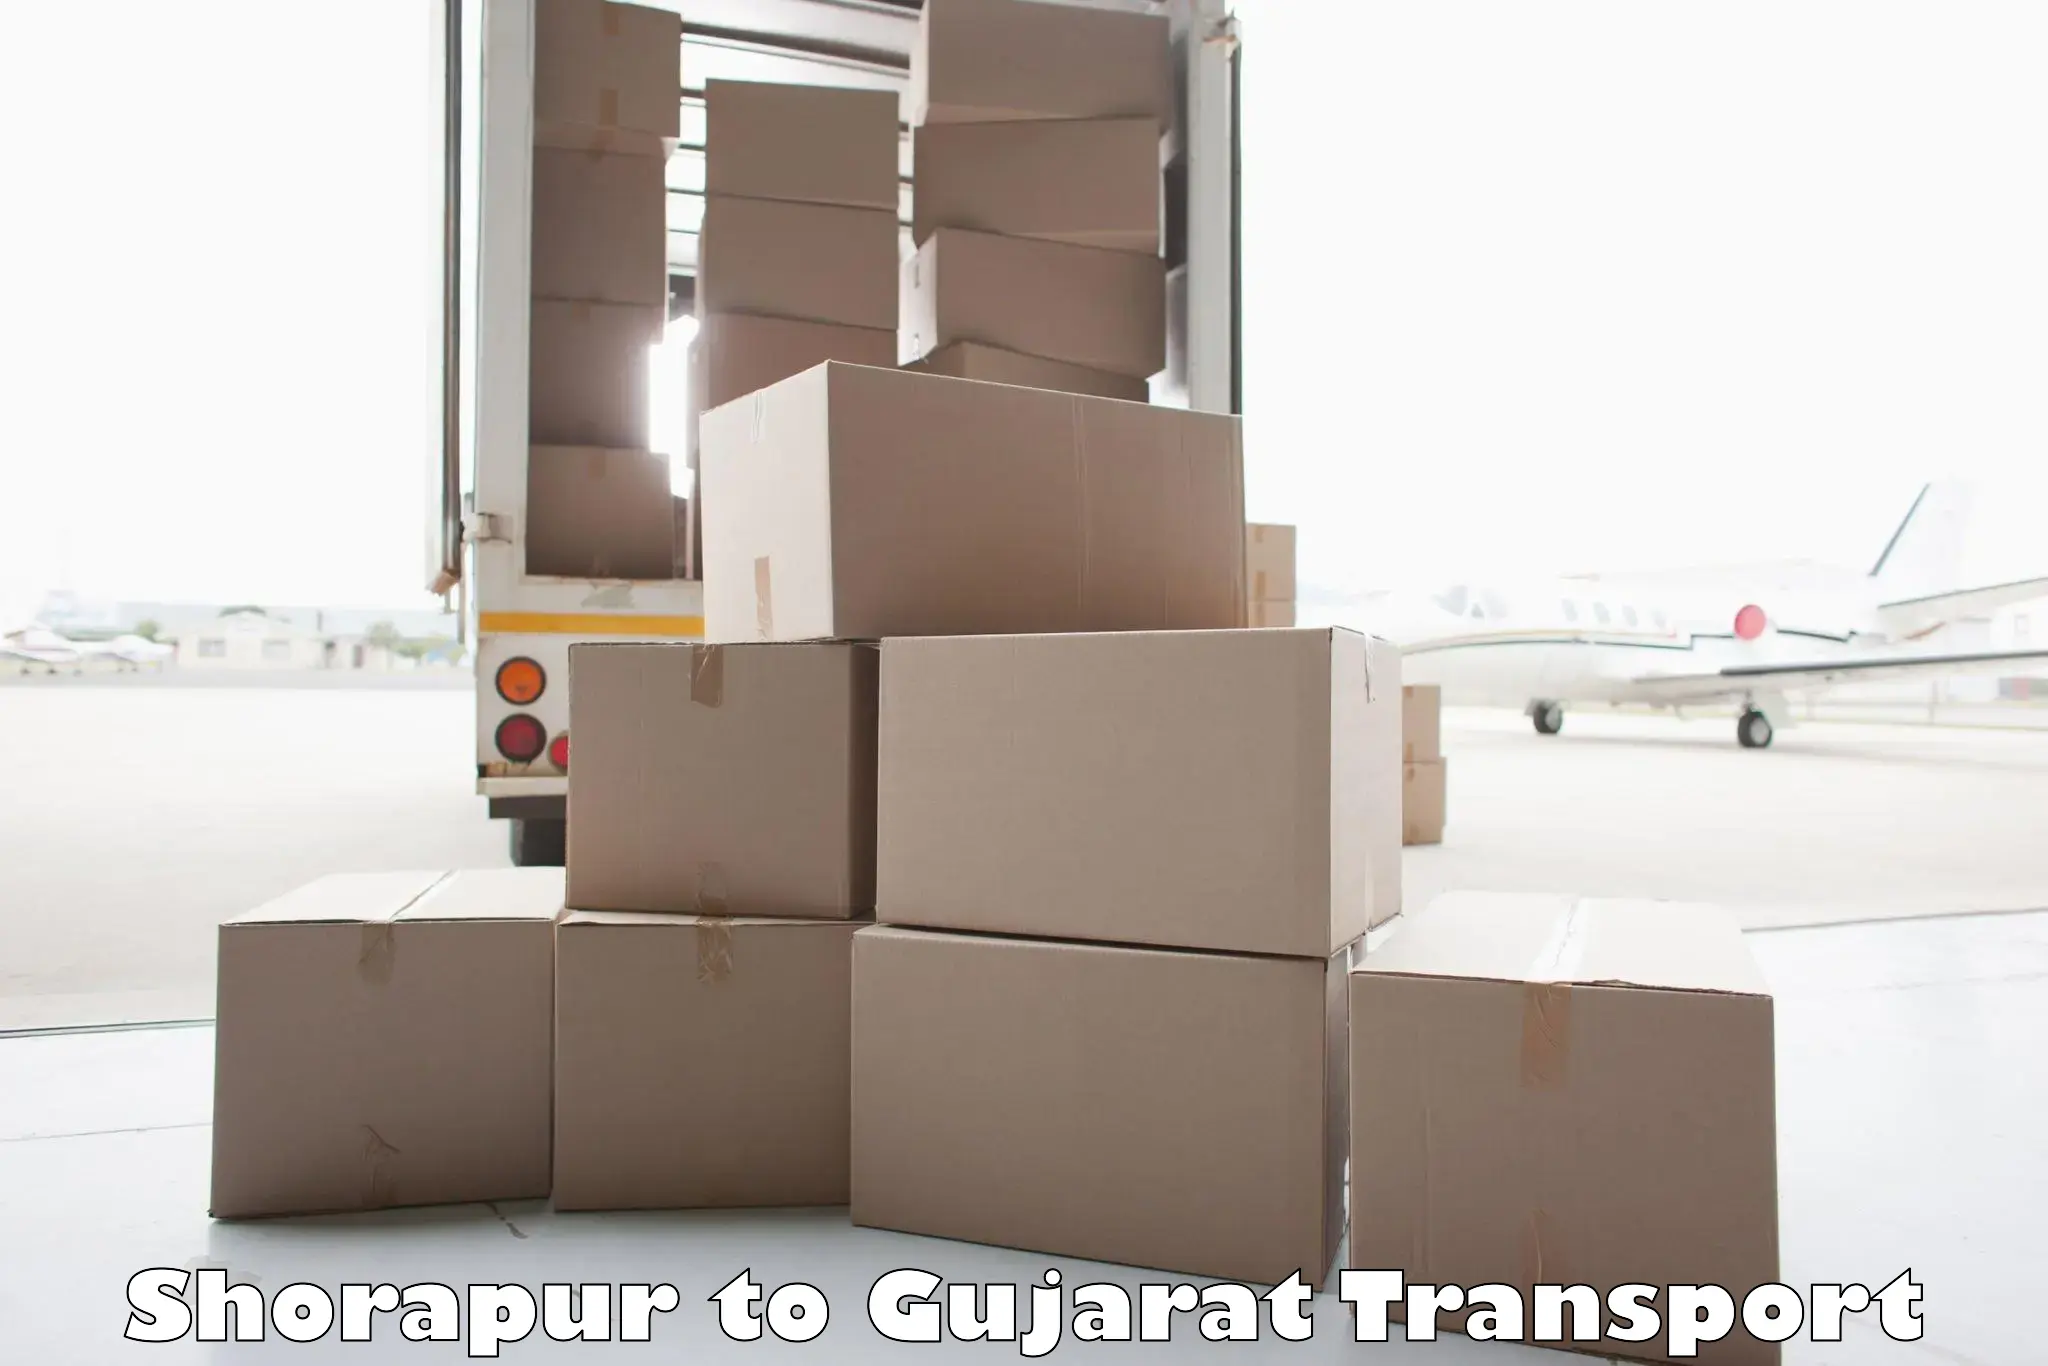 International cargo transportation services Shorapur to Rajkot